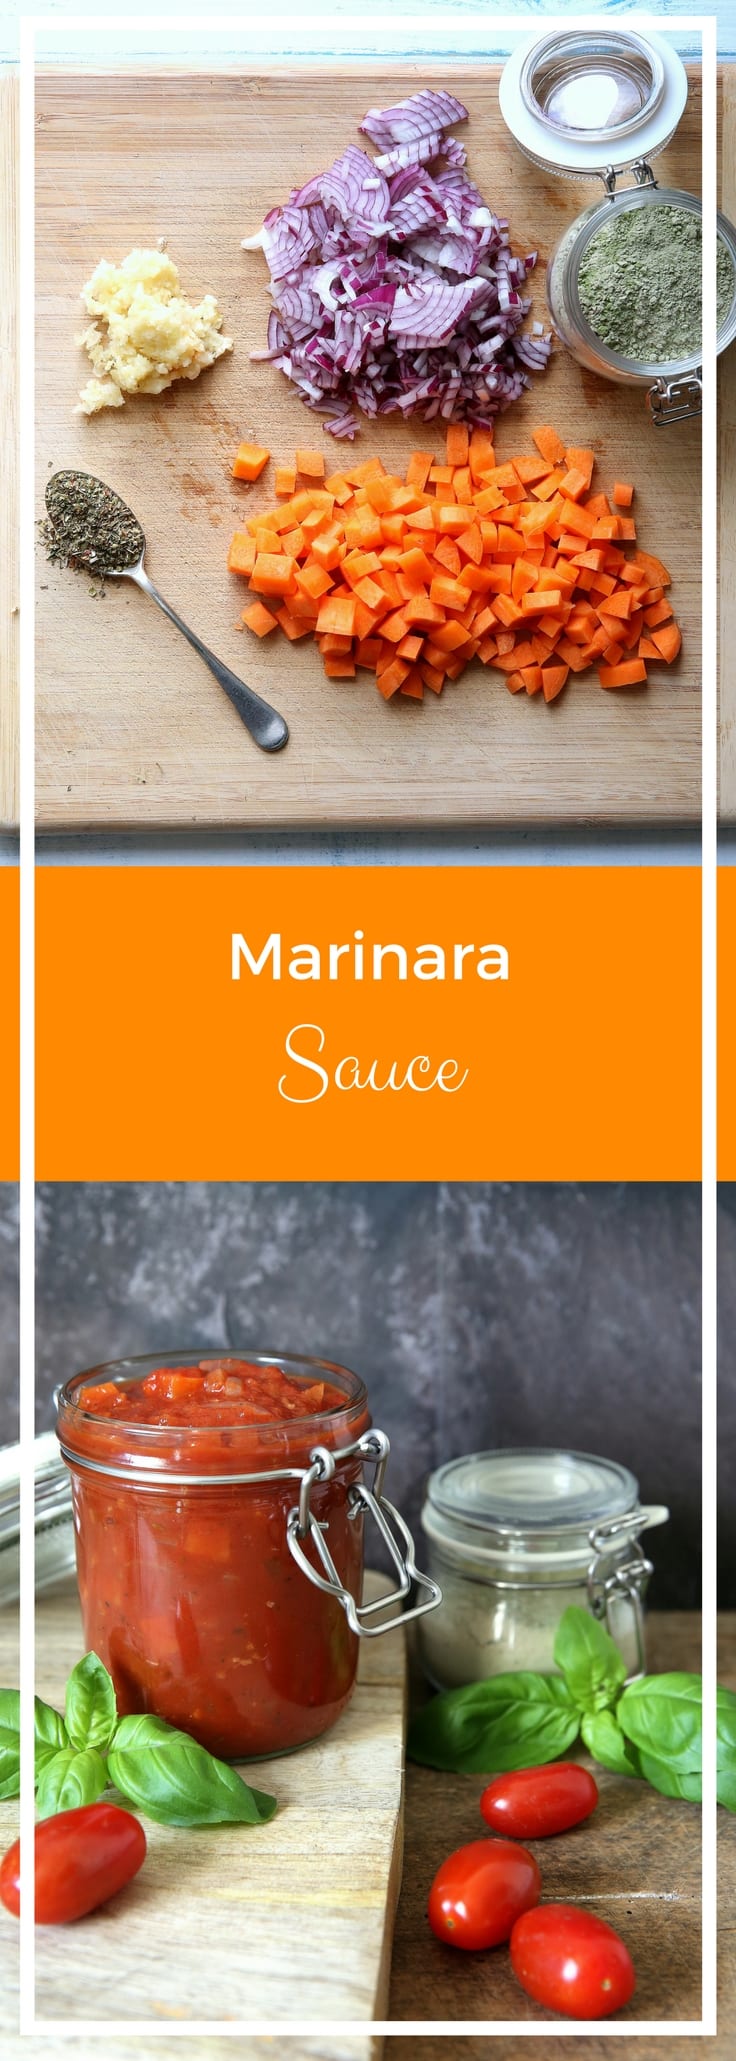 Marinara Sauce - Vegan & Gluten Free | thecookandhim.com